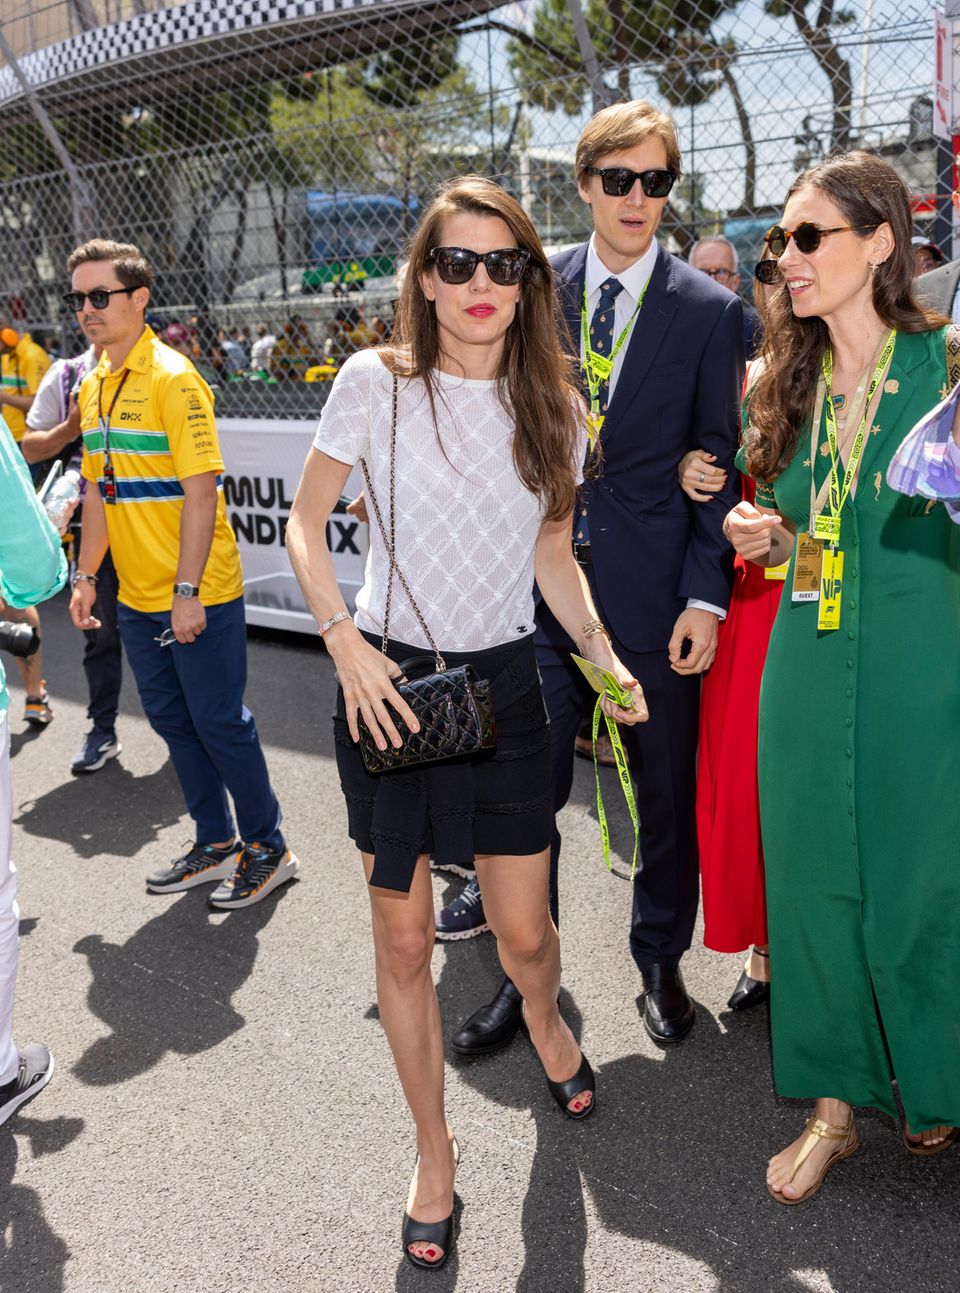 Luxus, aber sportlich! Charlotte Casiraghi zeigt sich beim Formel-1-Grand-Prix in Monaco von Kopf bis Fuß in – was auch sonst – Chanel. Der Shirt-Minirock-Look stammt aus der aktuellen Prêt-à-Porter-Kollektion des Pariser Modehauses, ebenso wie die Tasche, die Schuhe und die Sonnenbrille.